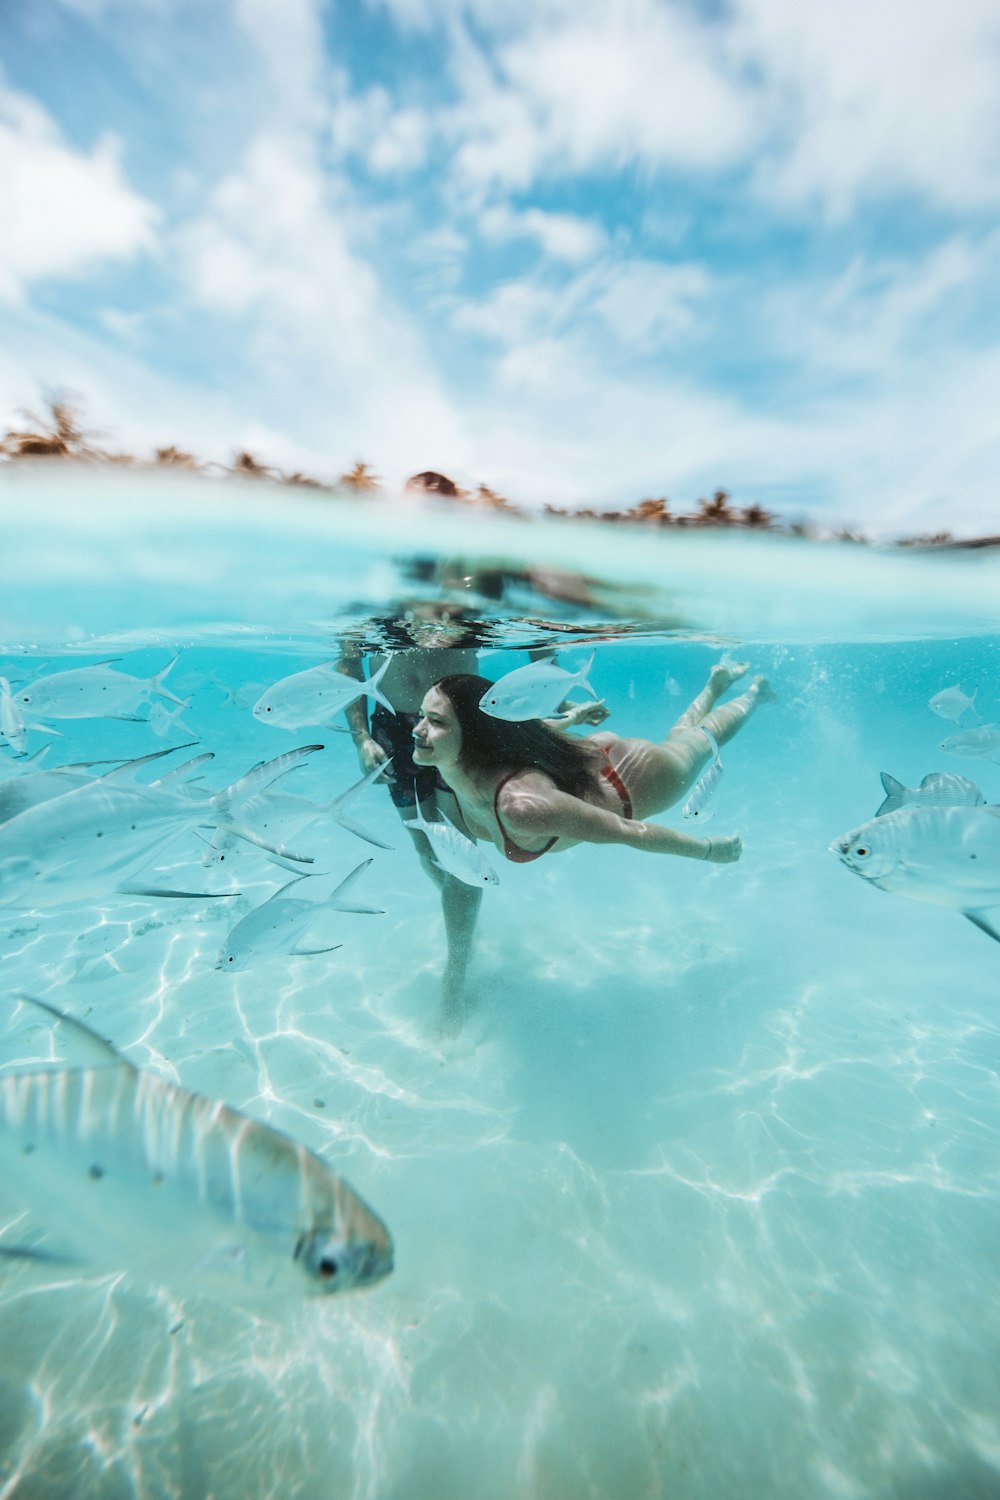 deux personnes plongeant sur un plan d’eau clair